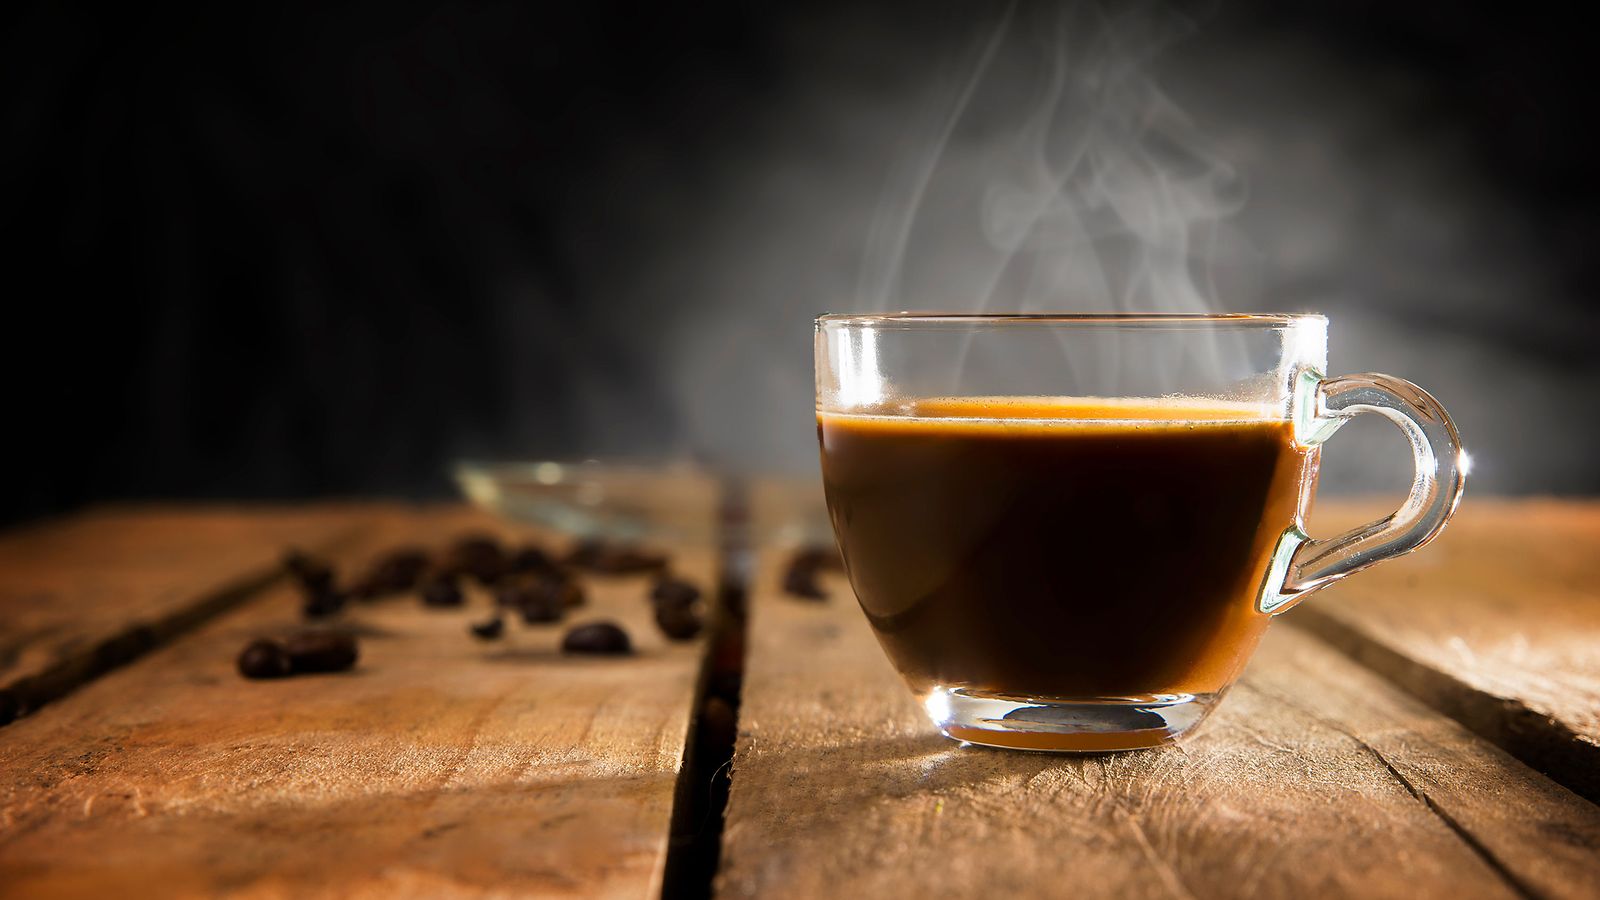 Fråga oss om kaffe: En rykande kopp kaffe på ett träbord.